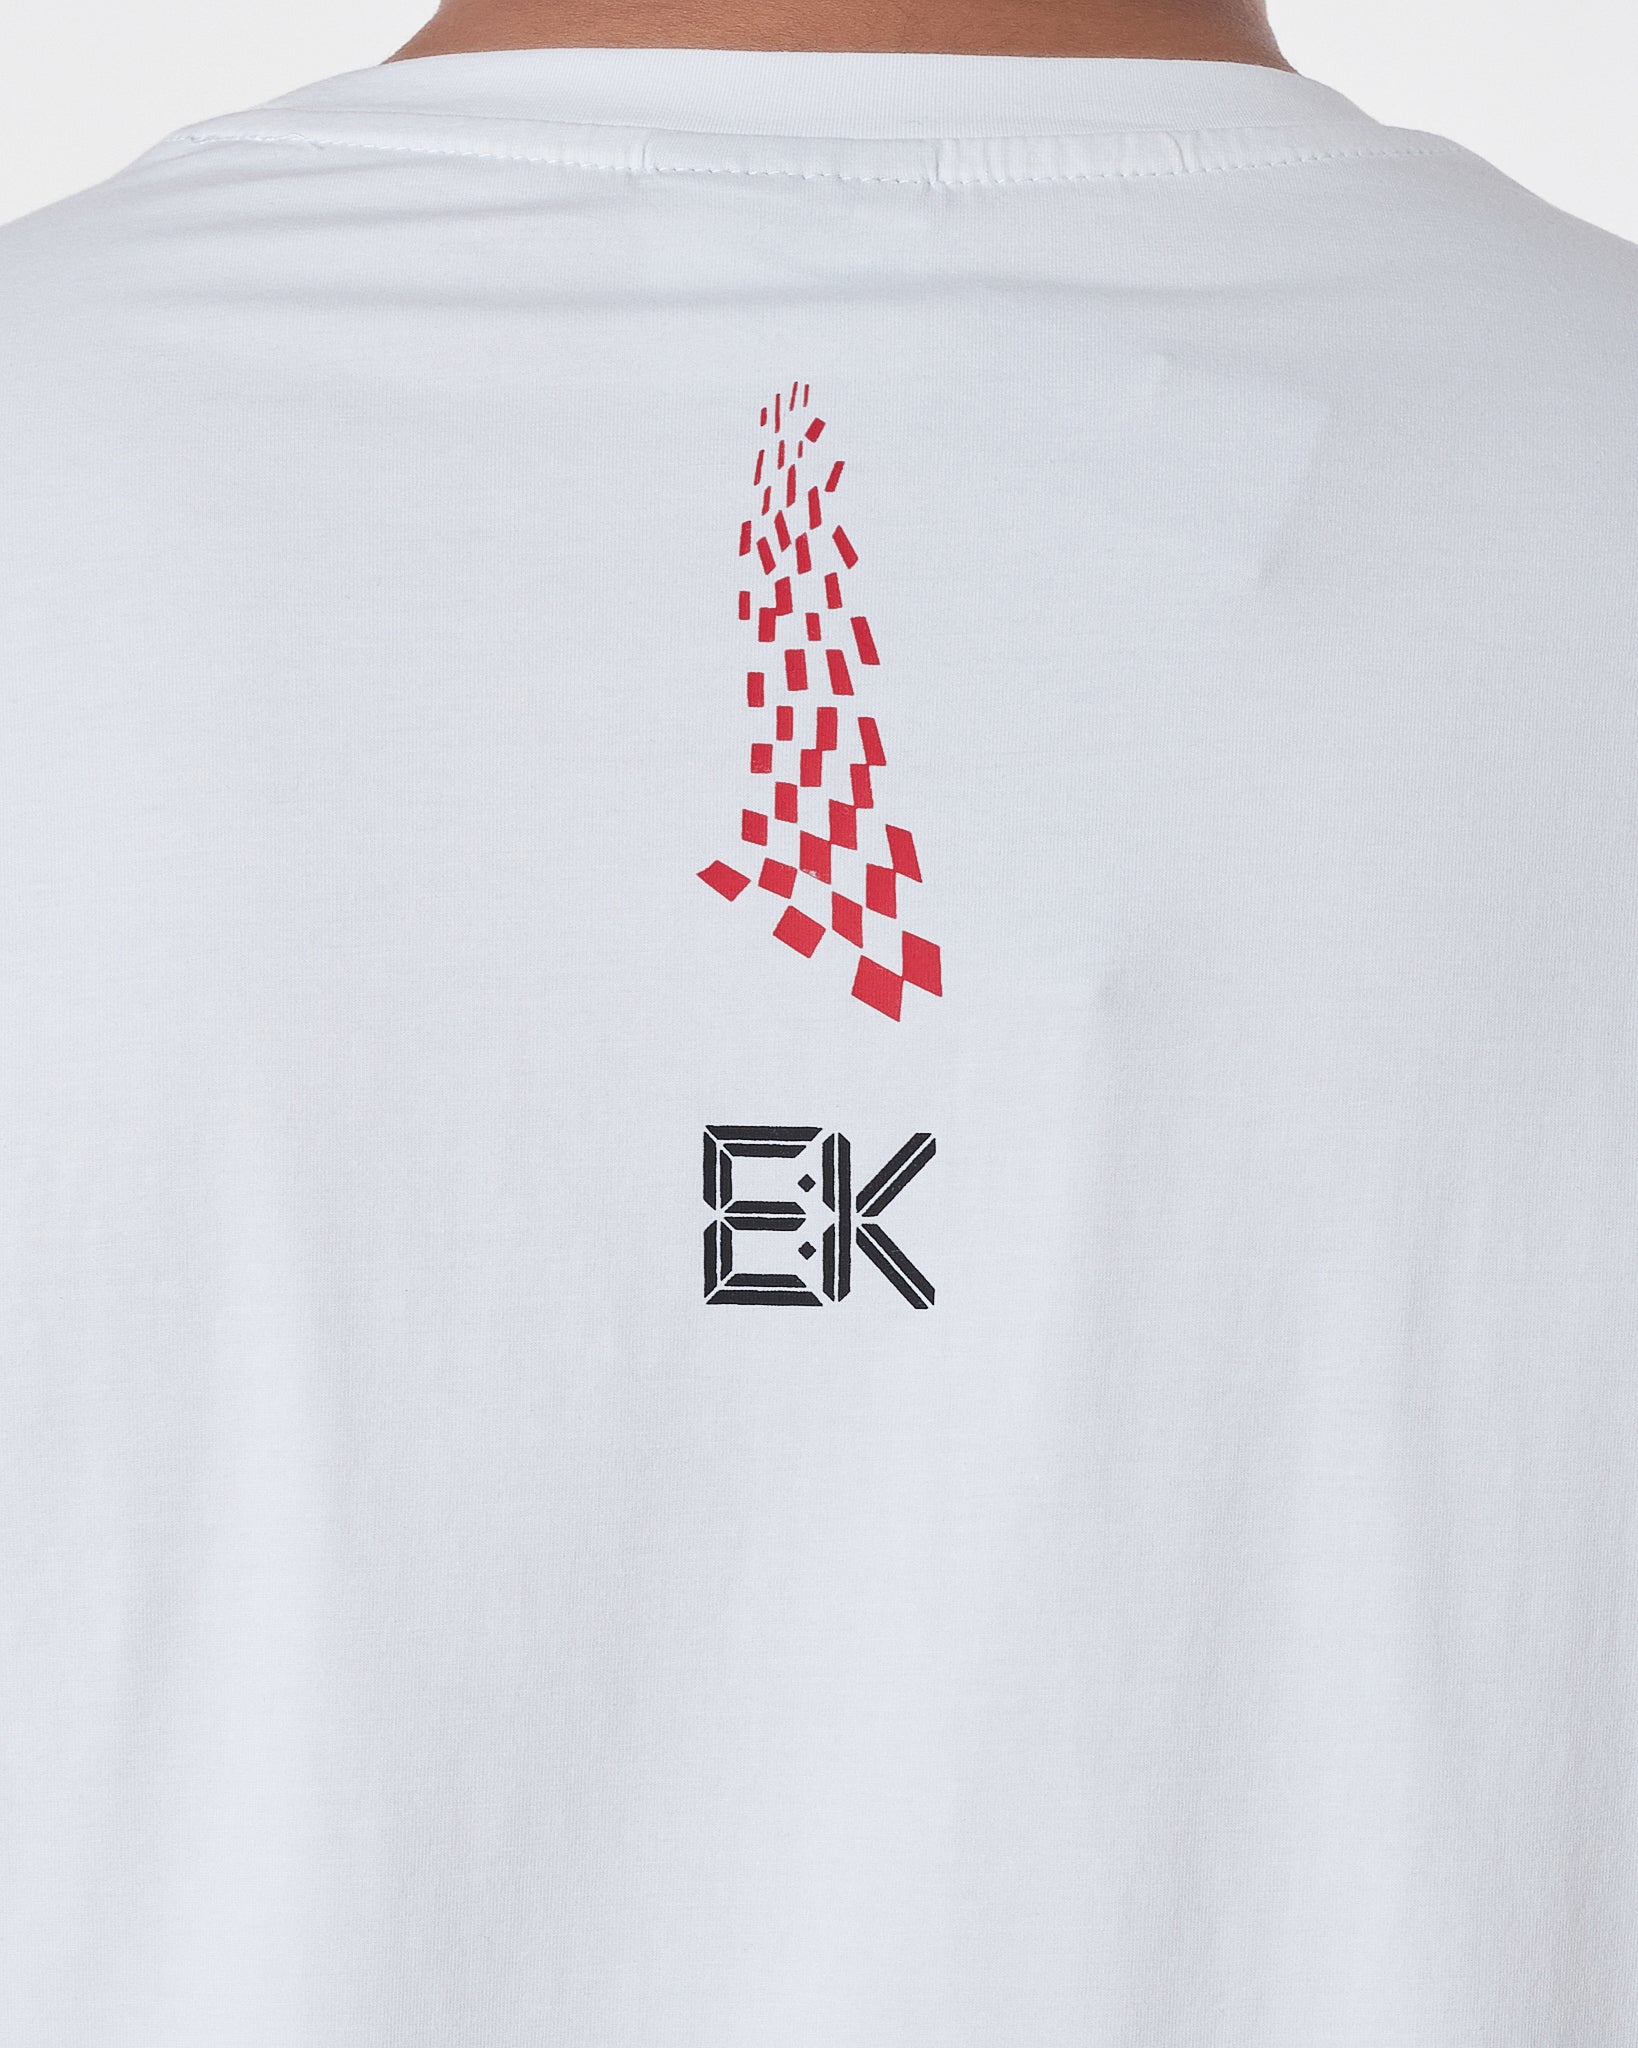 NIK Swooh Logo Printed Men White T-Shirt 14.50